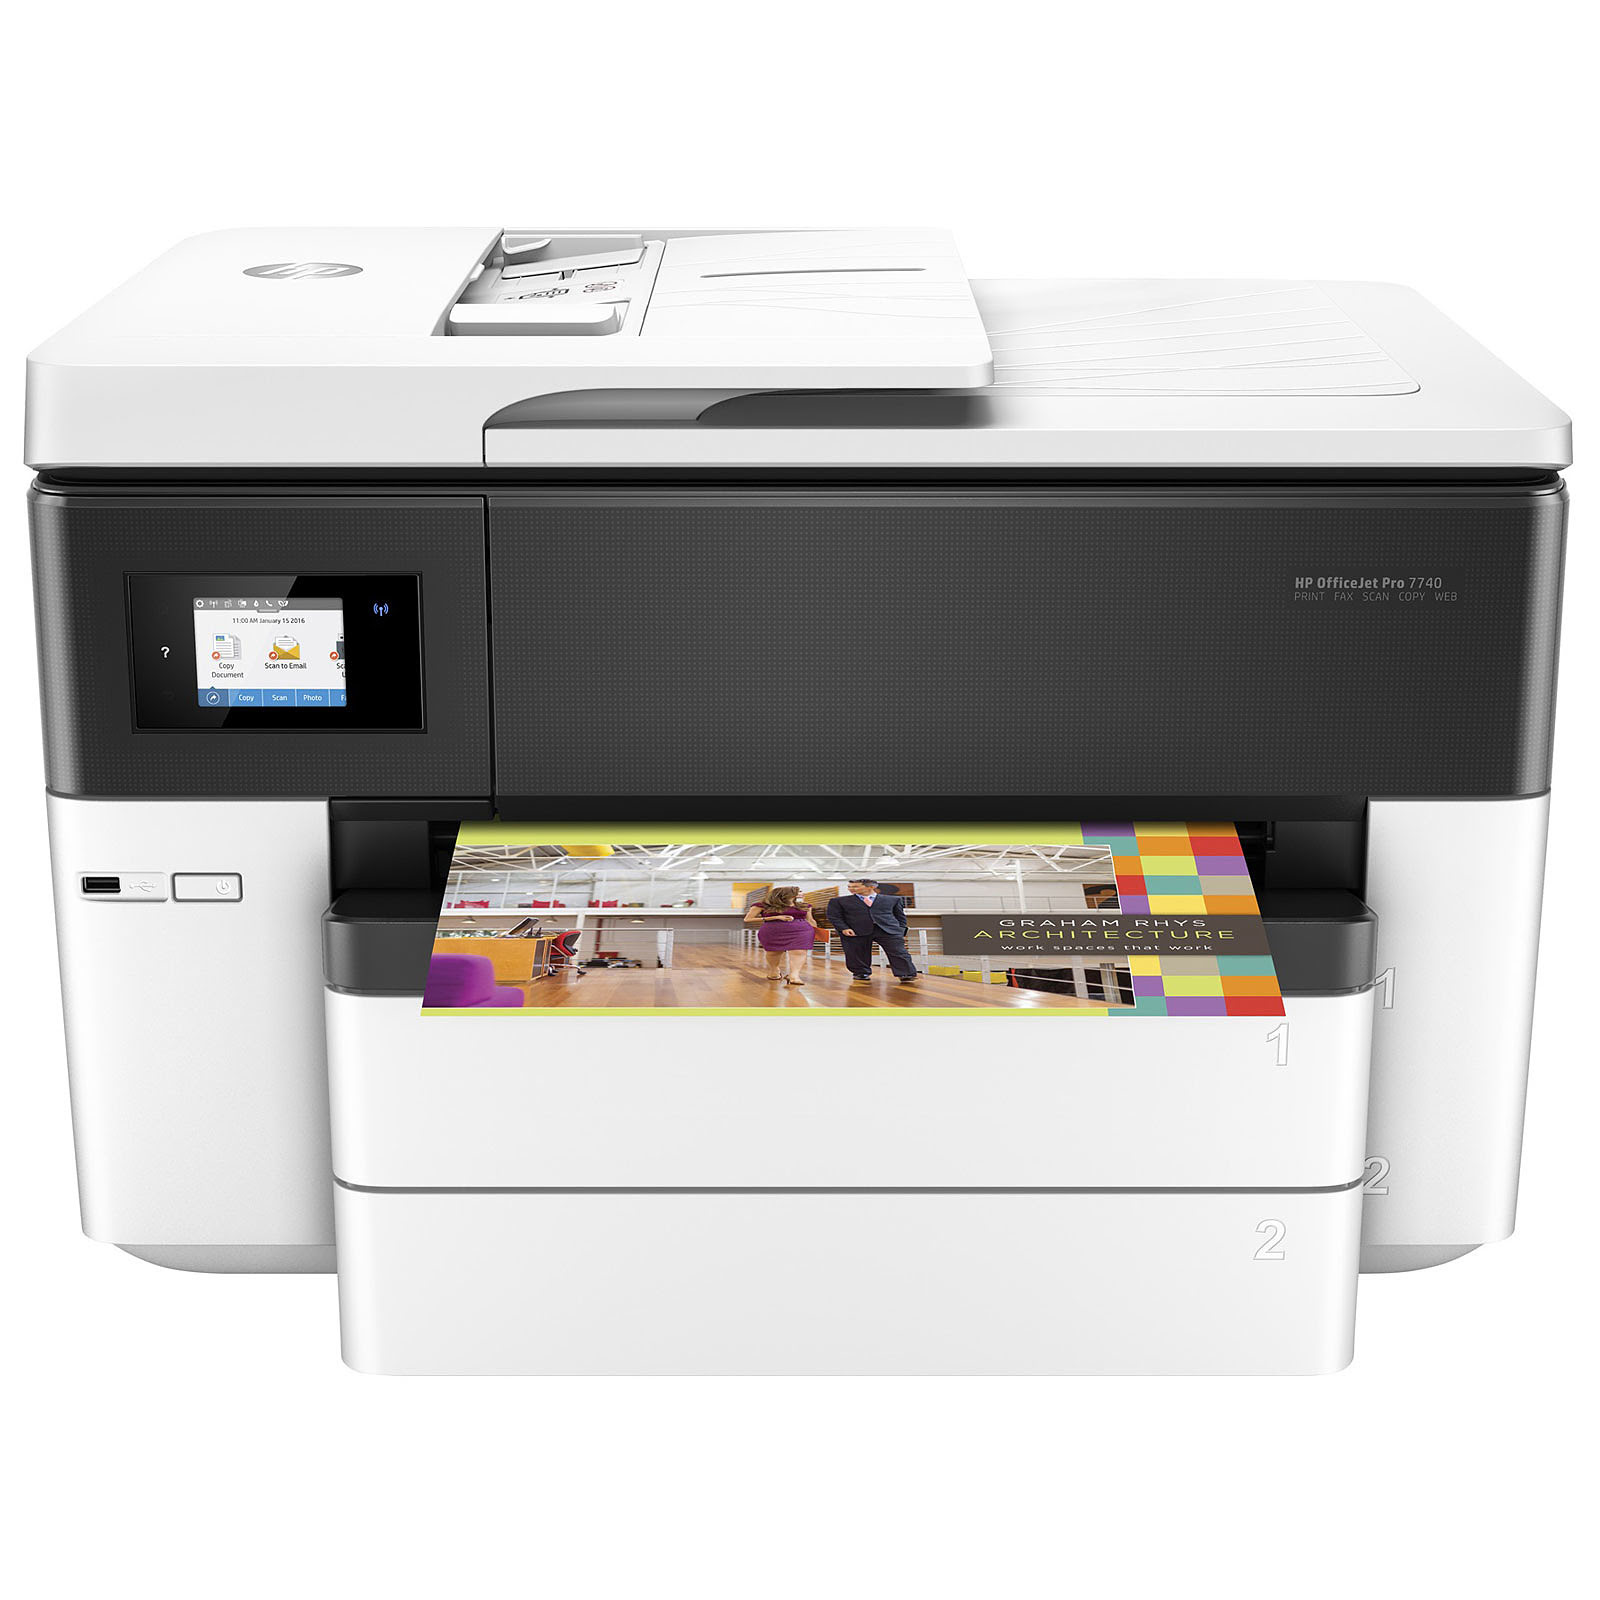 Imprimante multifonction HP OfficeJet Pro 7740 - Cybertek.fr - 4